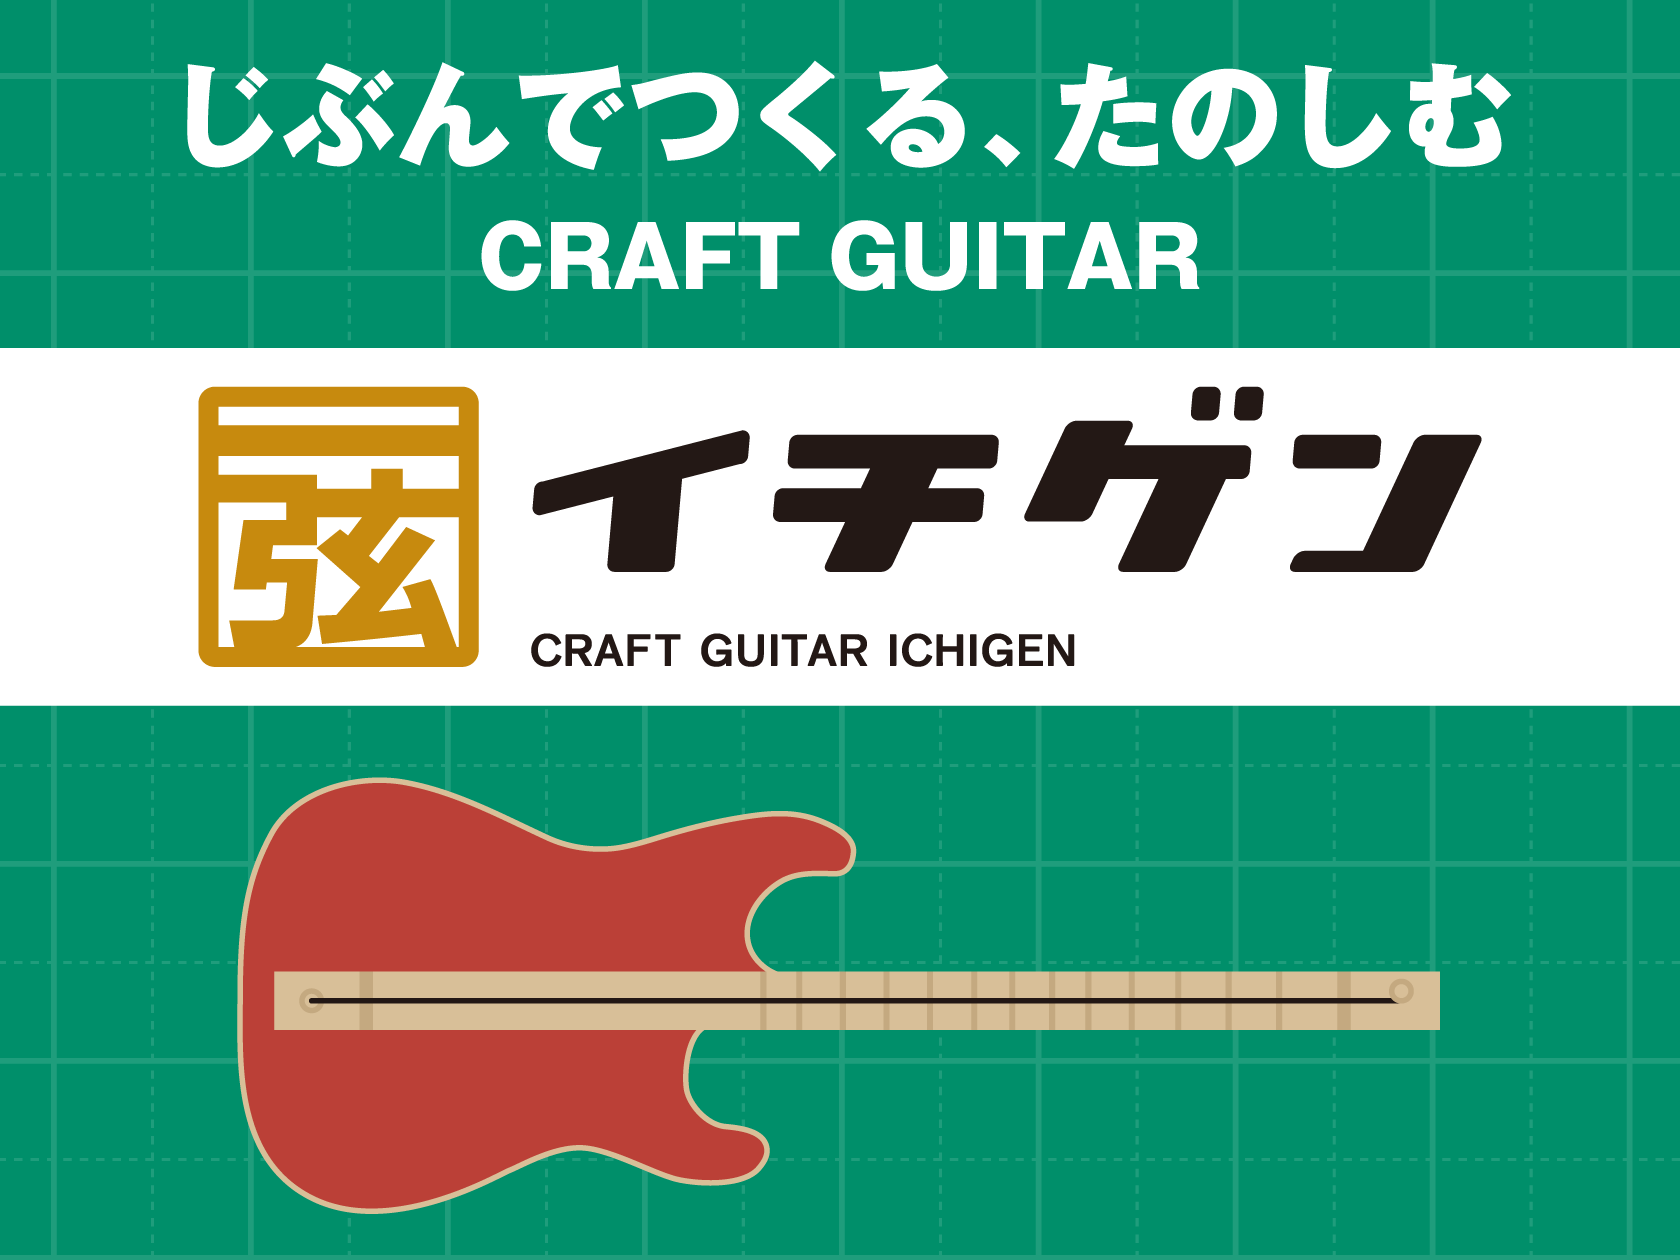 1本弦の簡単ギター！『イチゲン』の製作ワークショップイベントを開催致します！ 皆さまこんにちは！スタッフの隅田・西本です。 8/12(土)エキスポシティ店にてワークショップイベントを開催致します。　 ・手軽に楽器を始めてみたいな ・ギターをやってみたいけど、気軽に始めてみたいな ・夏休みの自由研究の […]